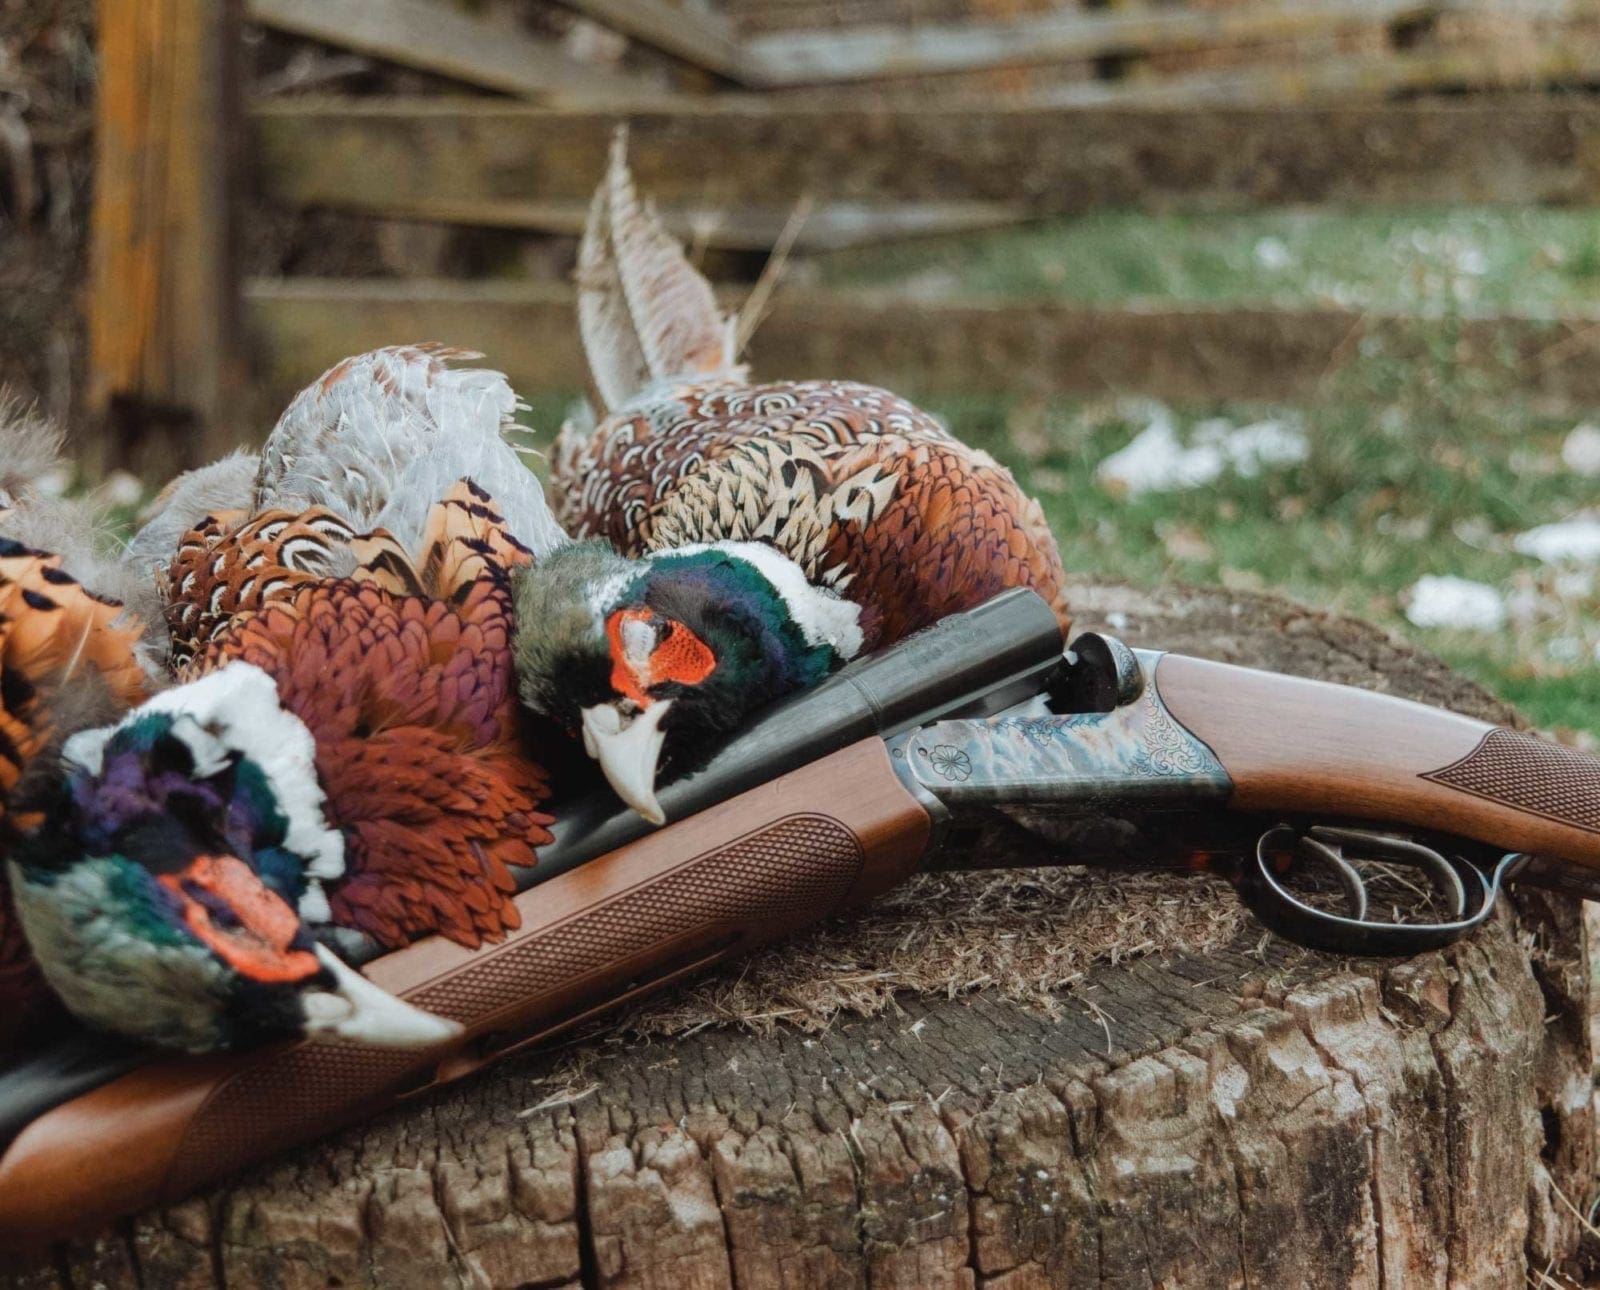 A CZ Bobwhite Shotgun during a pheasant hunt.